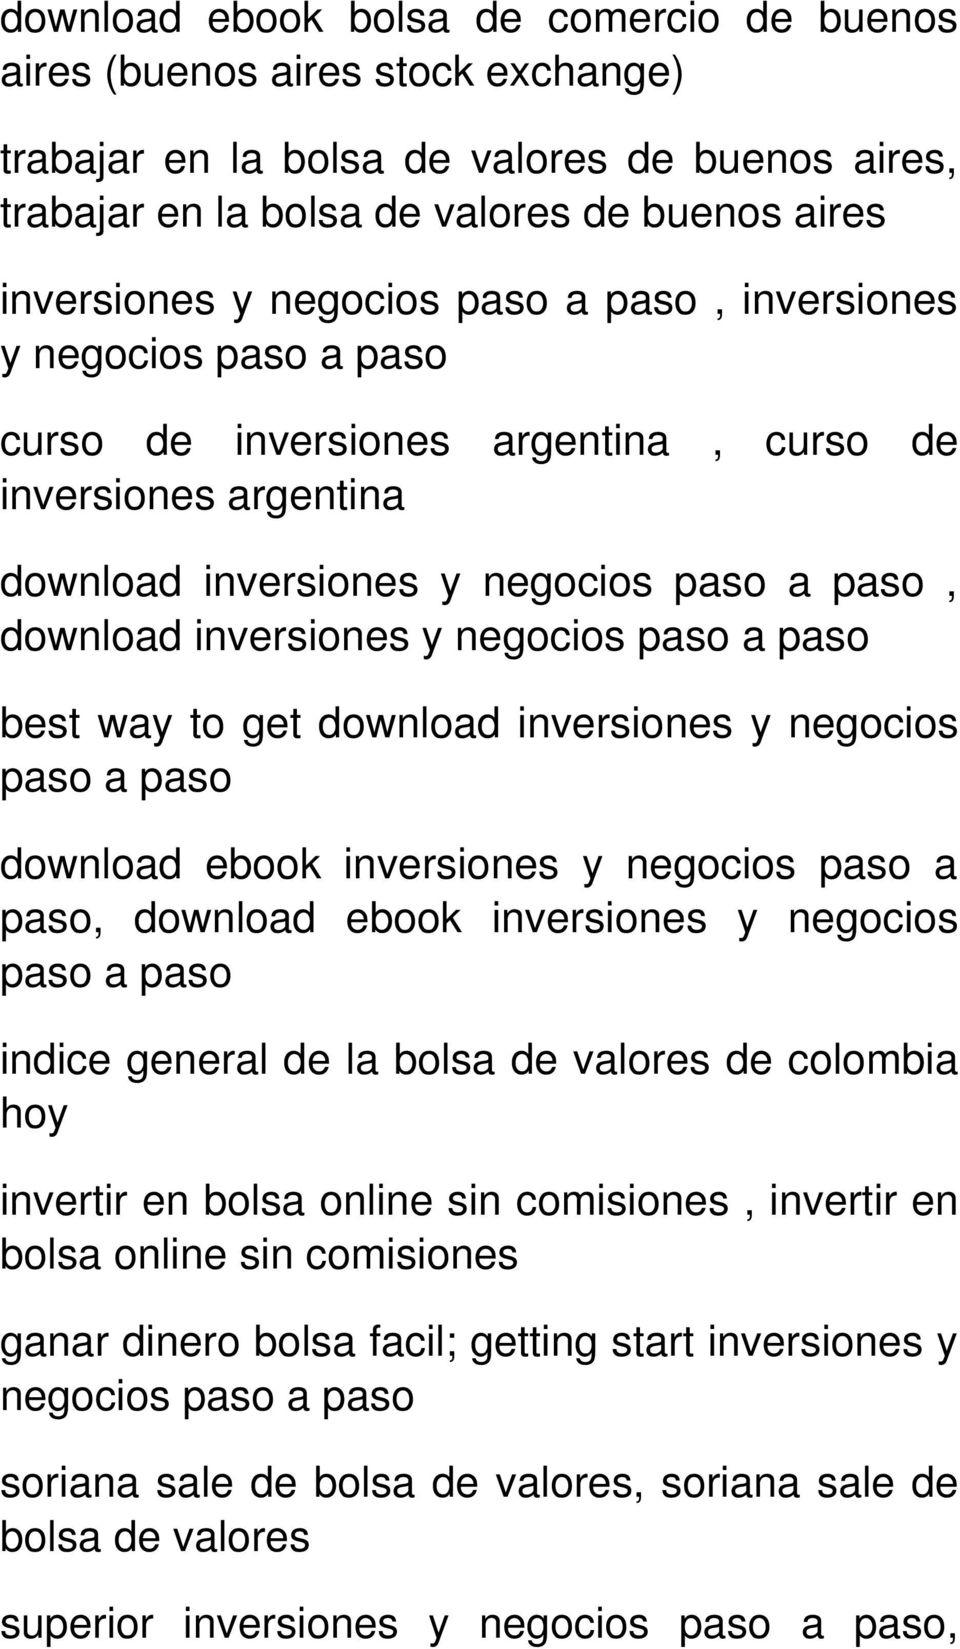 ebook inversiones y negocios paso a paso, download ebook inversiones y negocios paso a paso indice general de la bolsa de valores de colombia hoy invertir en bolsa online sin comisiones,